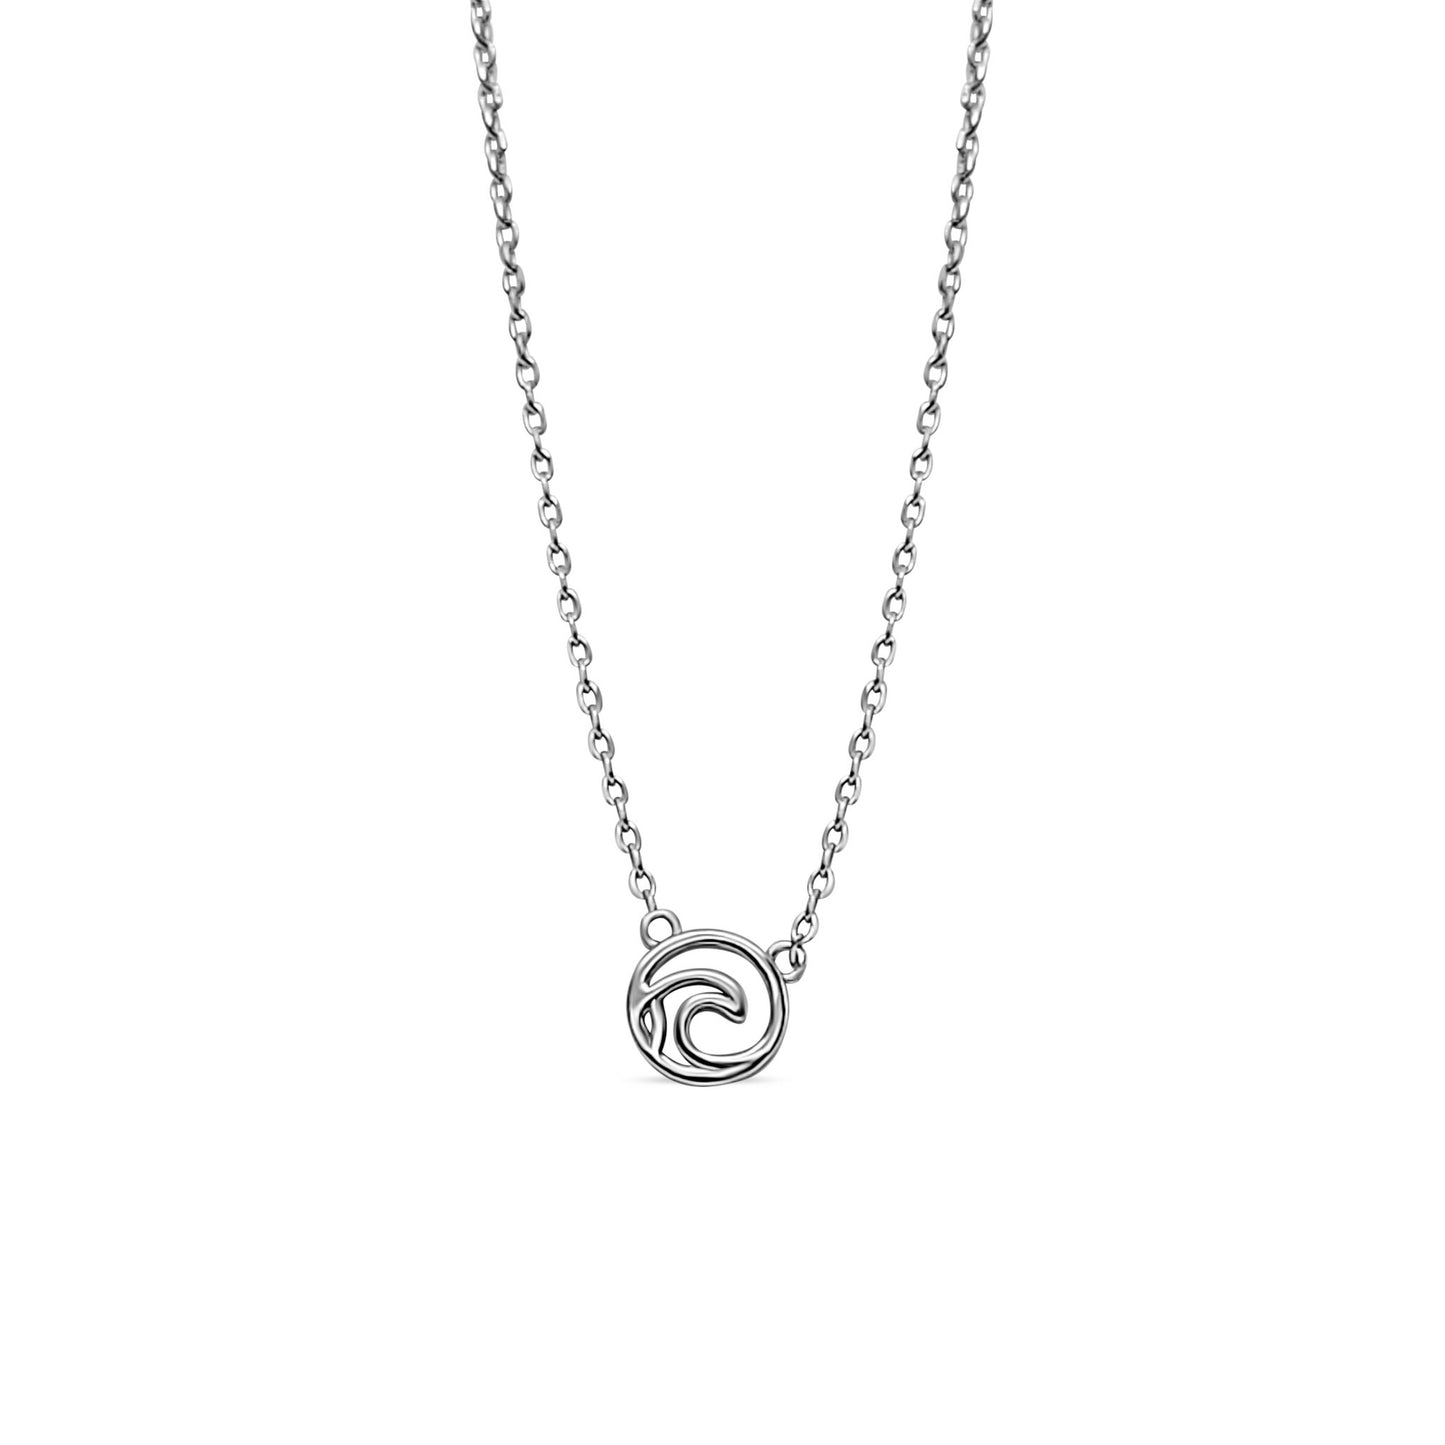 sterling silver Tofino ocean wave adjustable necklace 